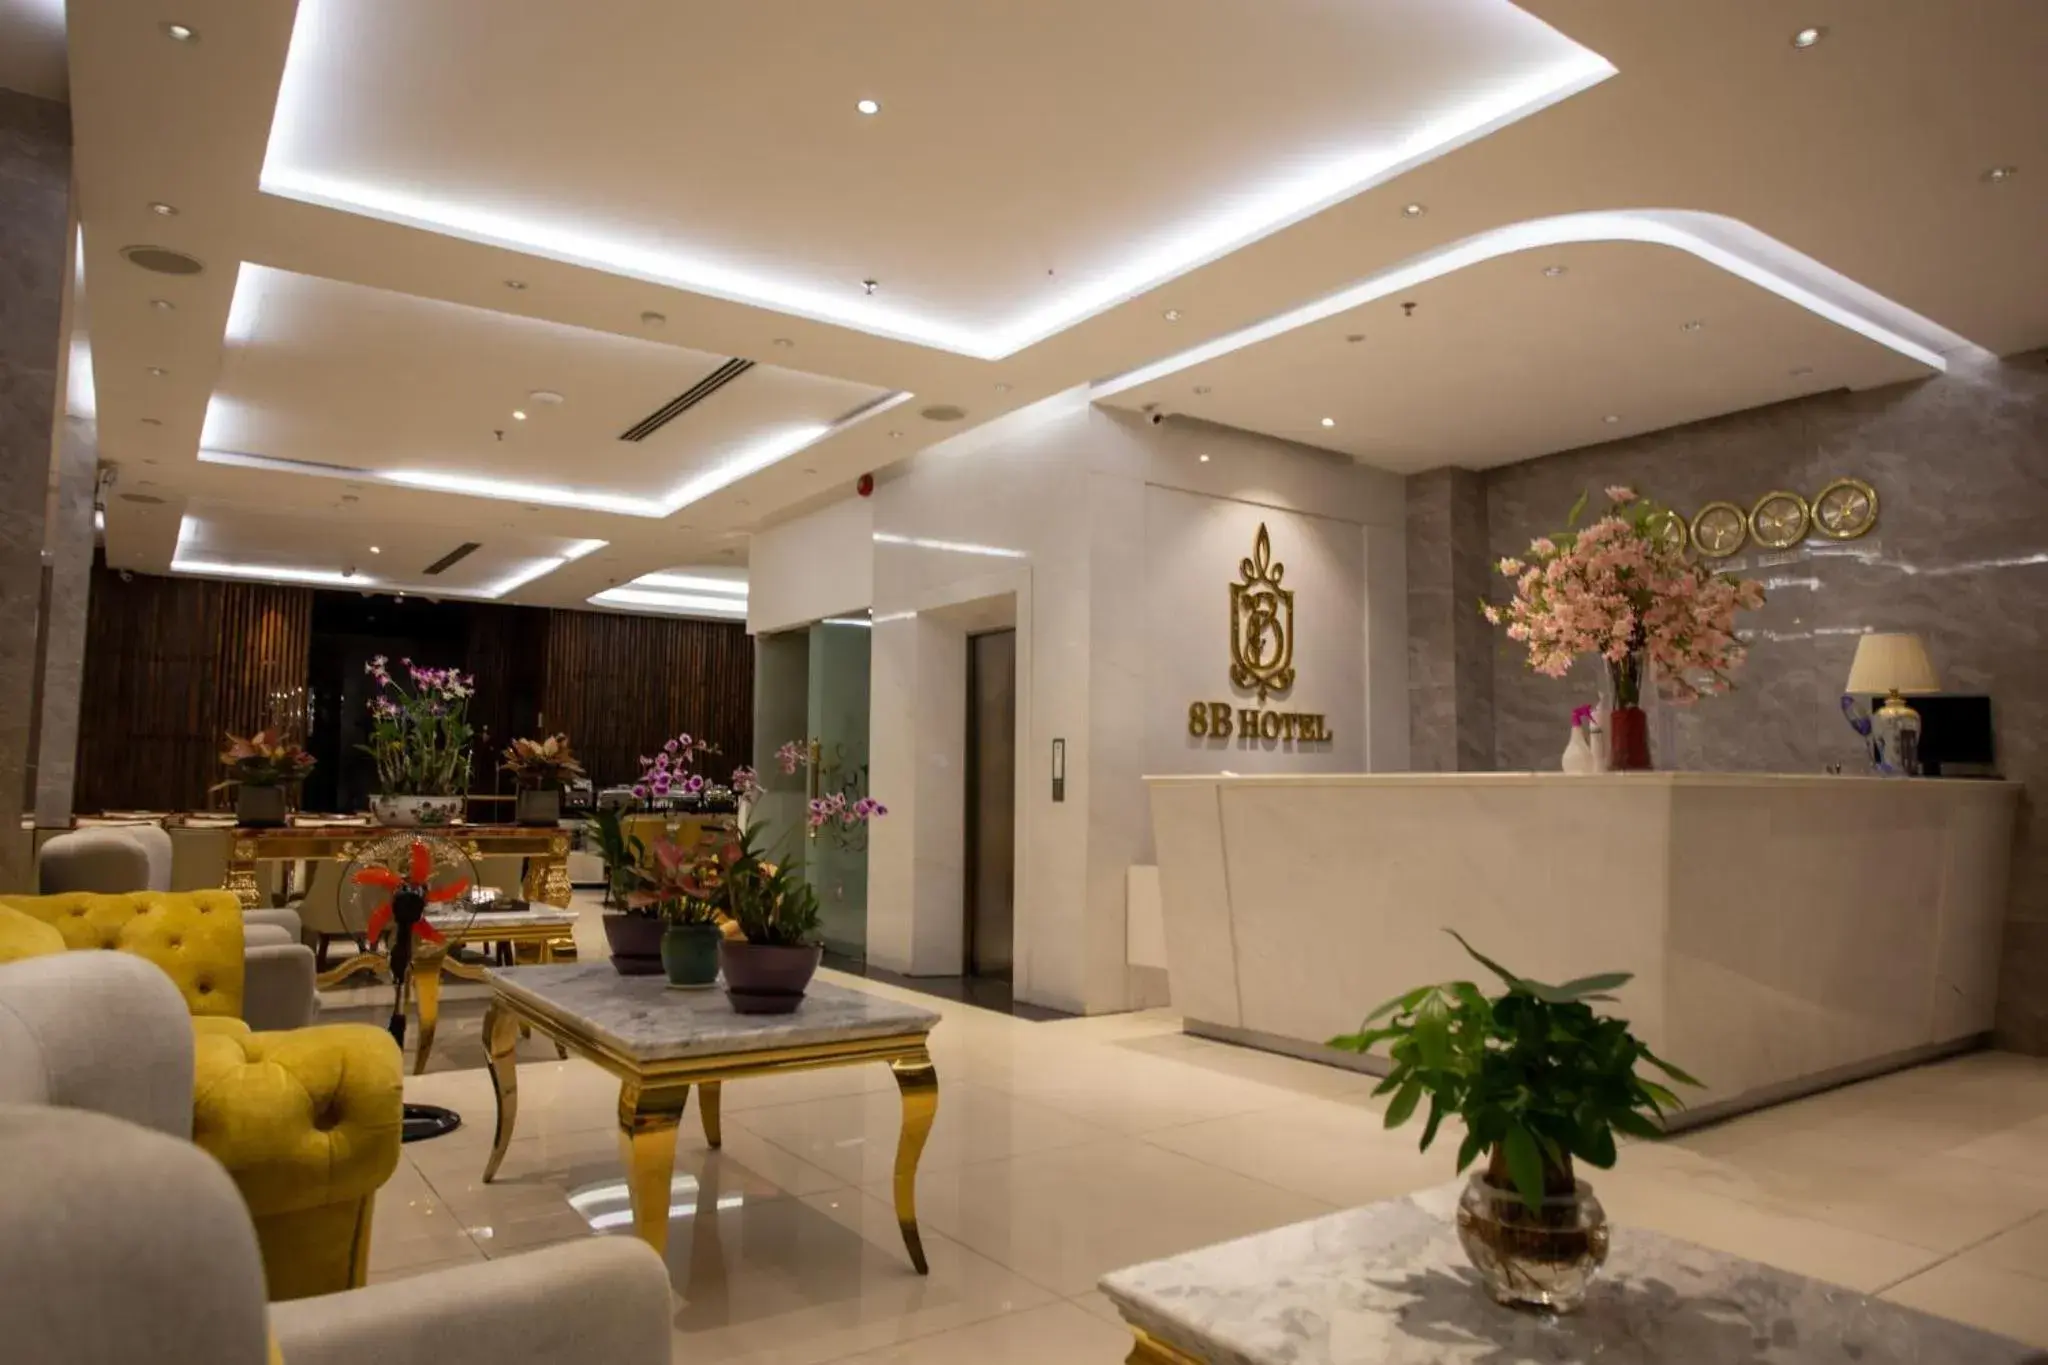 Lobby or reception, Lobby/Reception in BLUE DIAMOND 8B Hotel